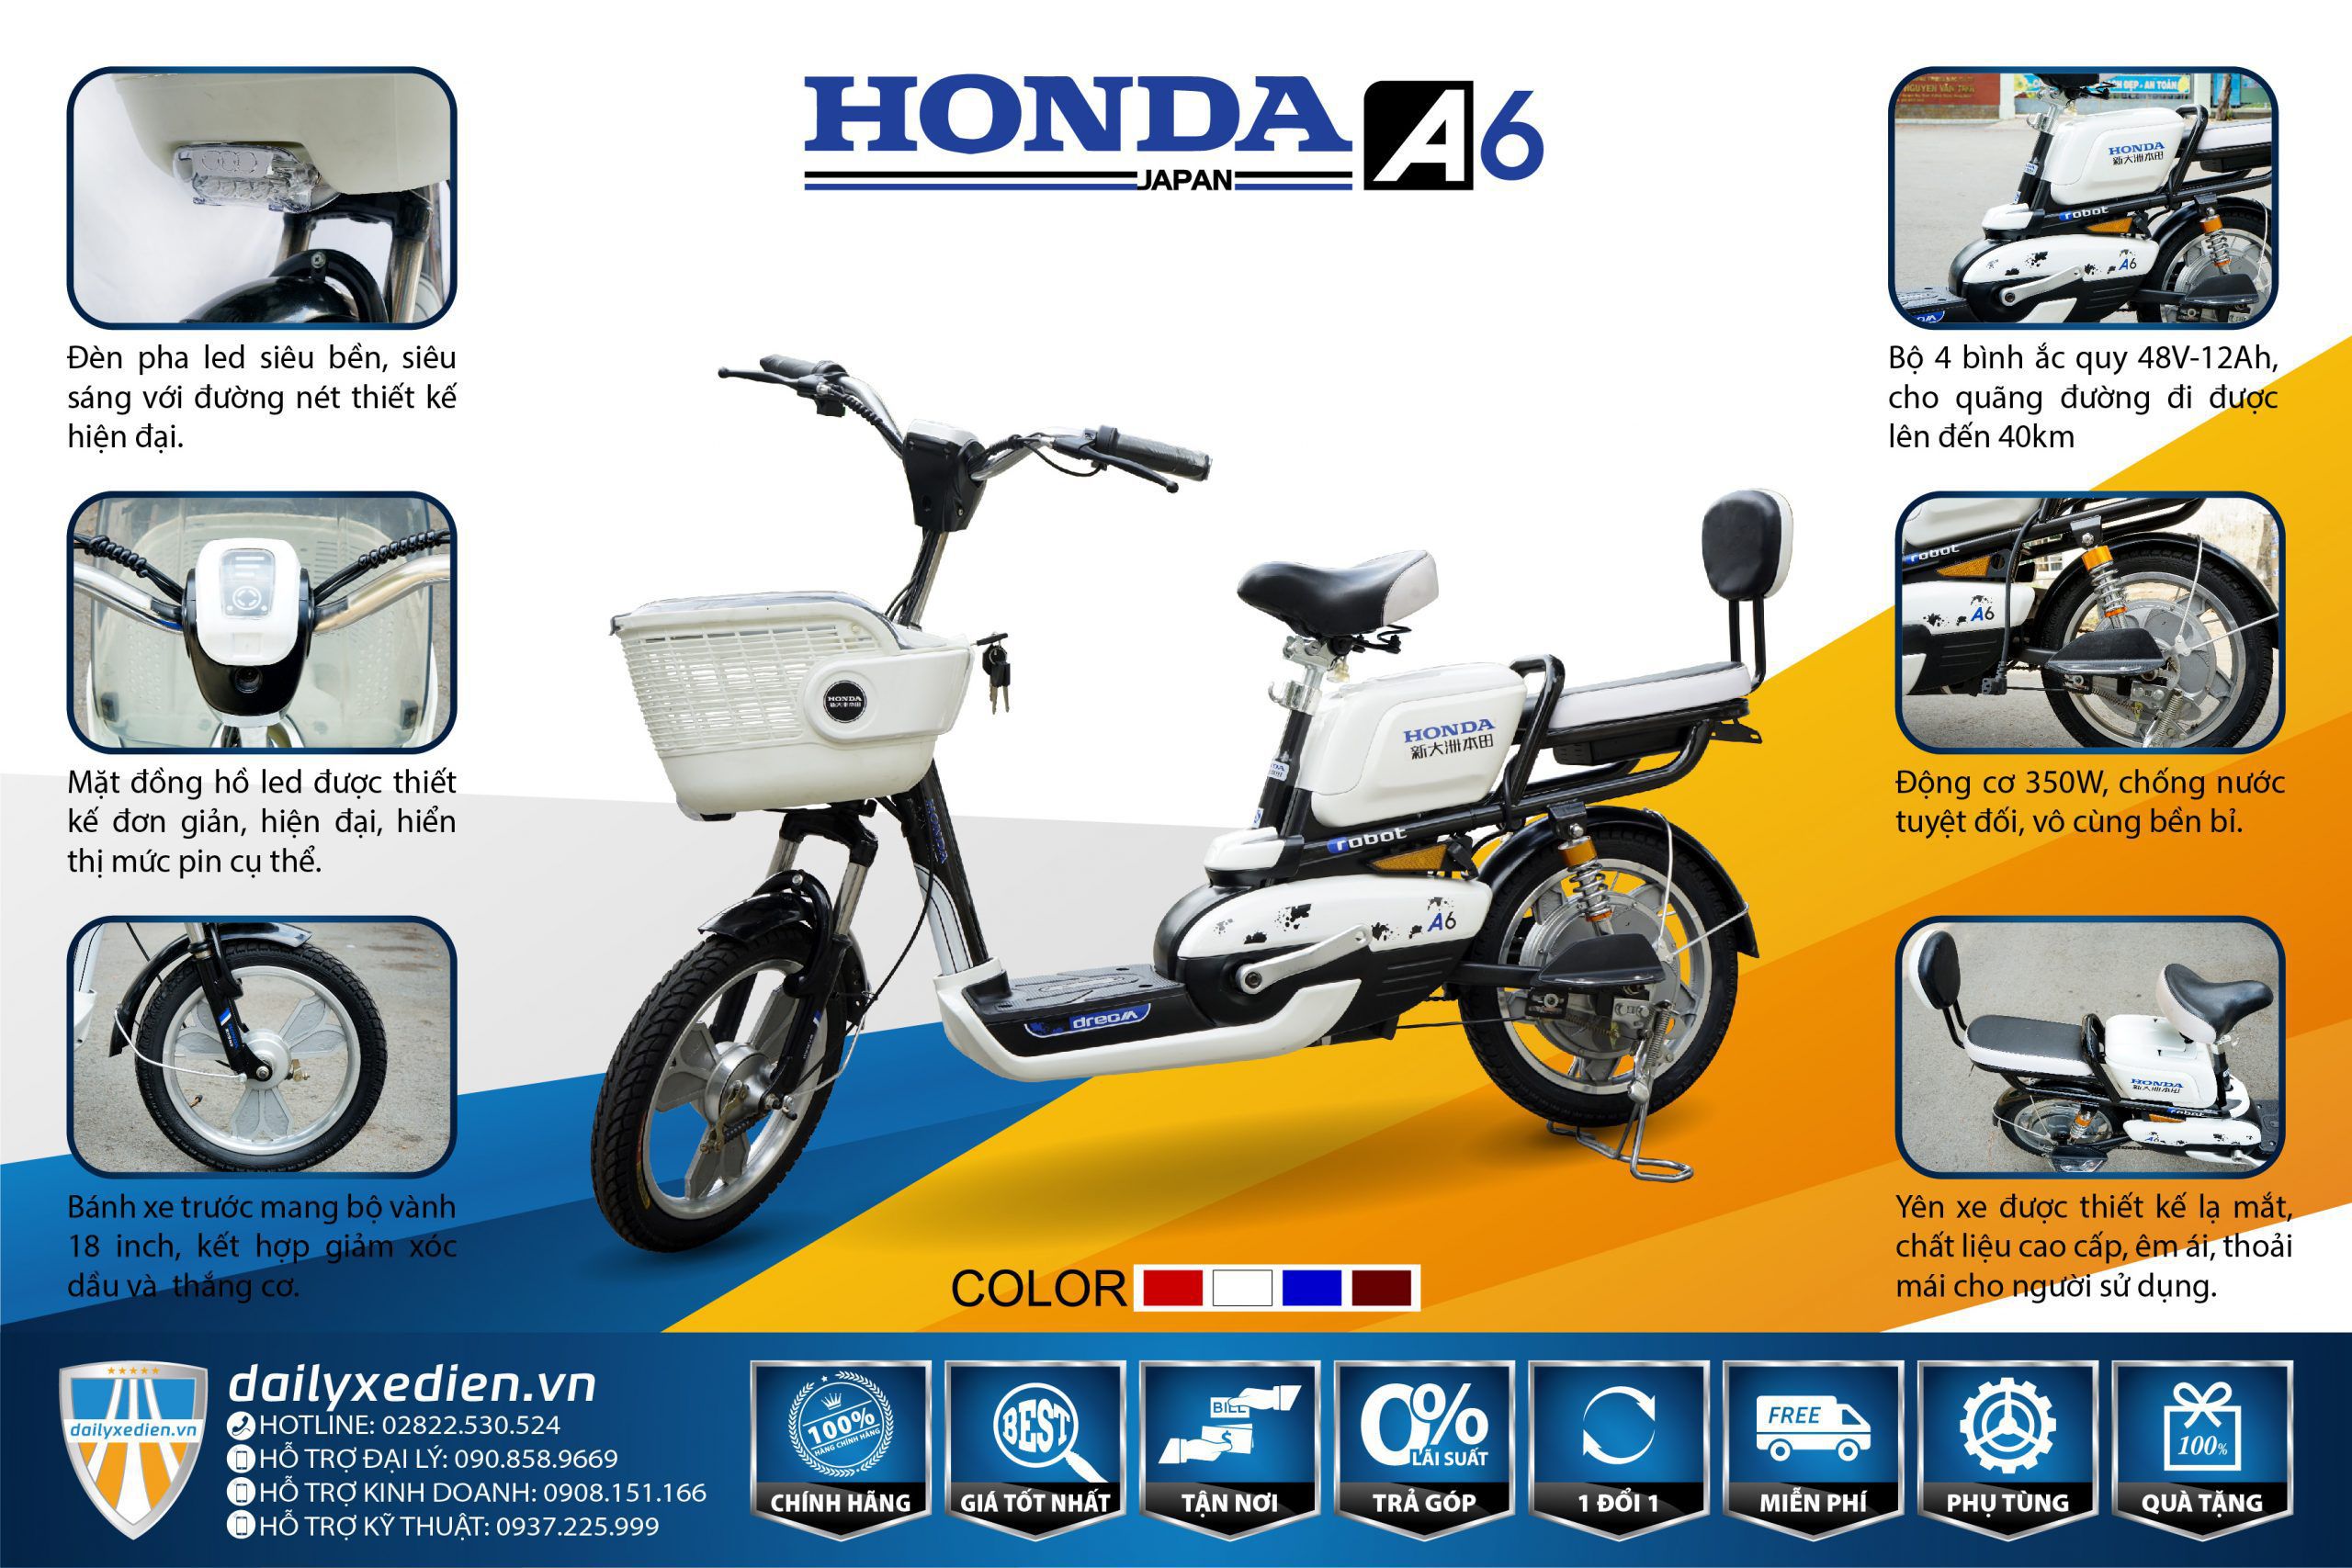 xe dap dien honda a6 new TT 01 scaled - Xe đạp điện Honda A6 mẫu mới Robot